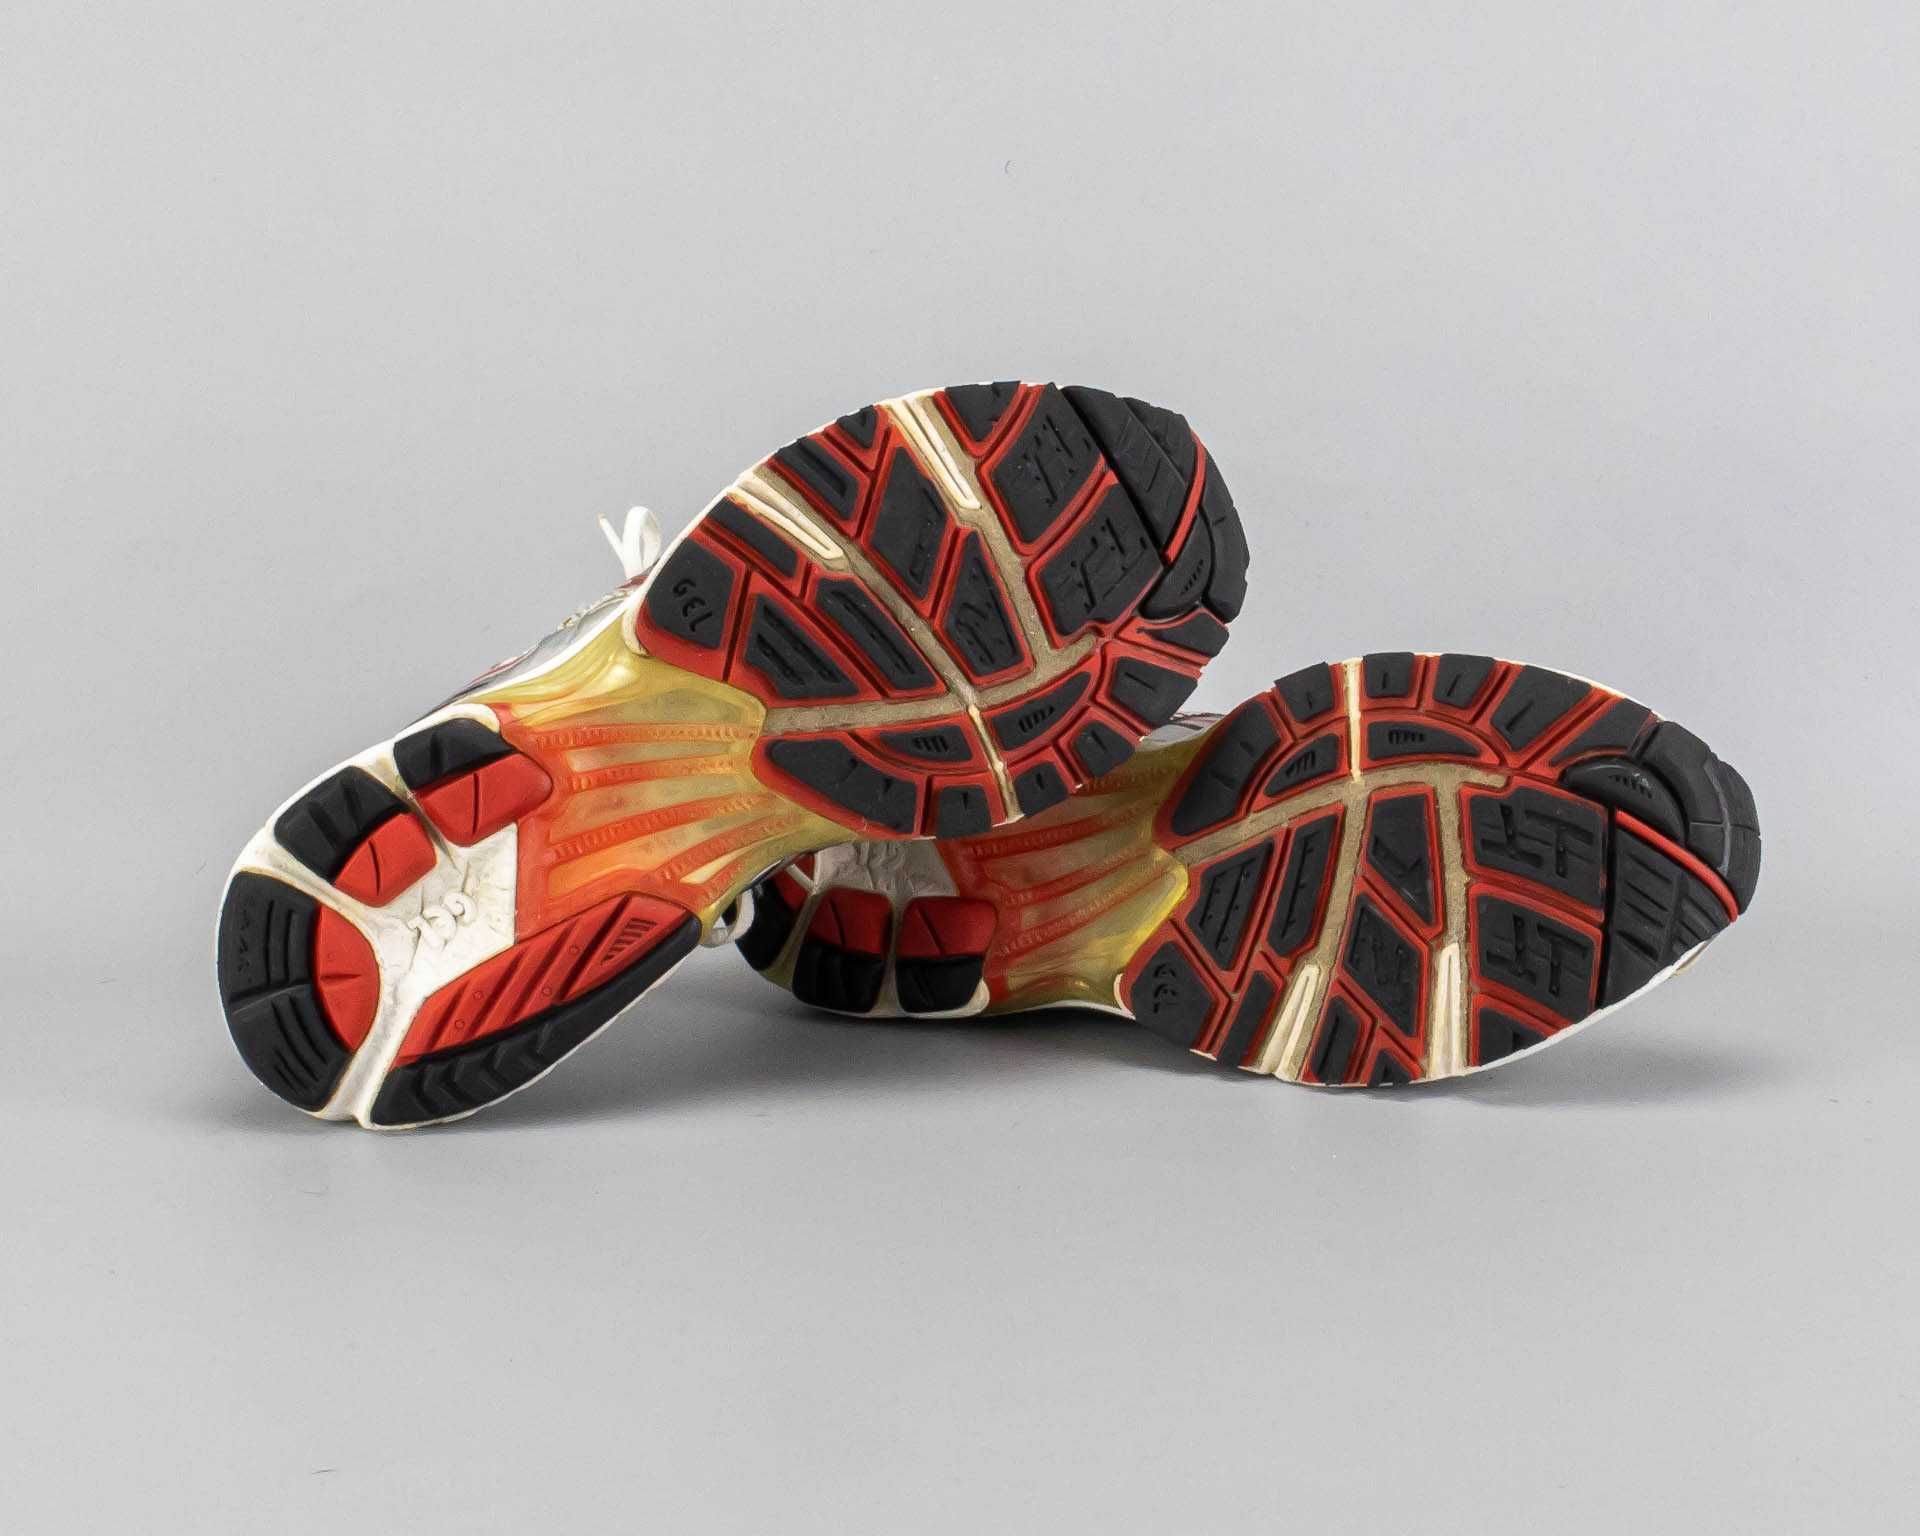 Беговые кроссовки в сетку Asics Gel-Kayano 12.40 размер